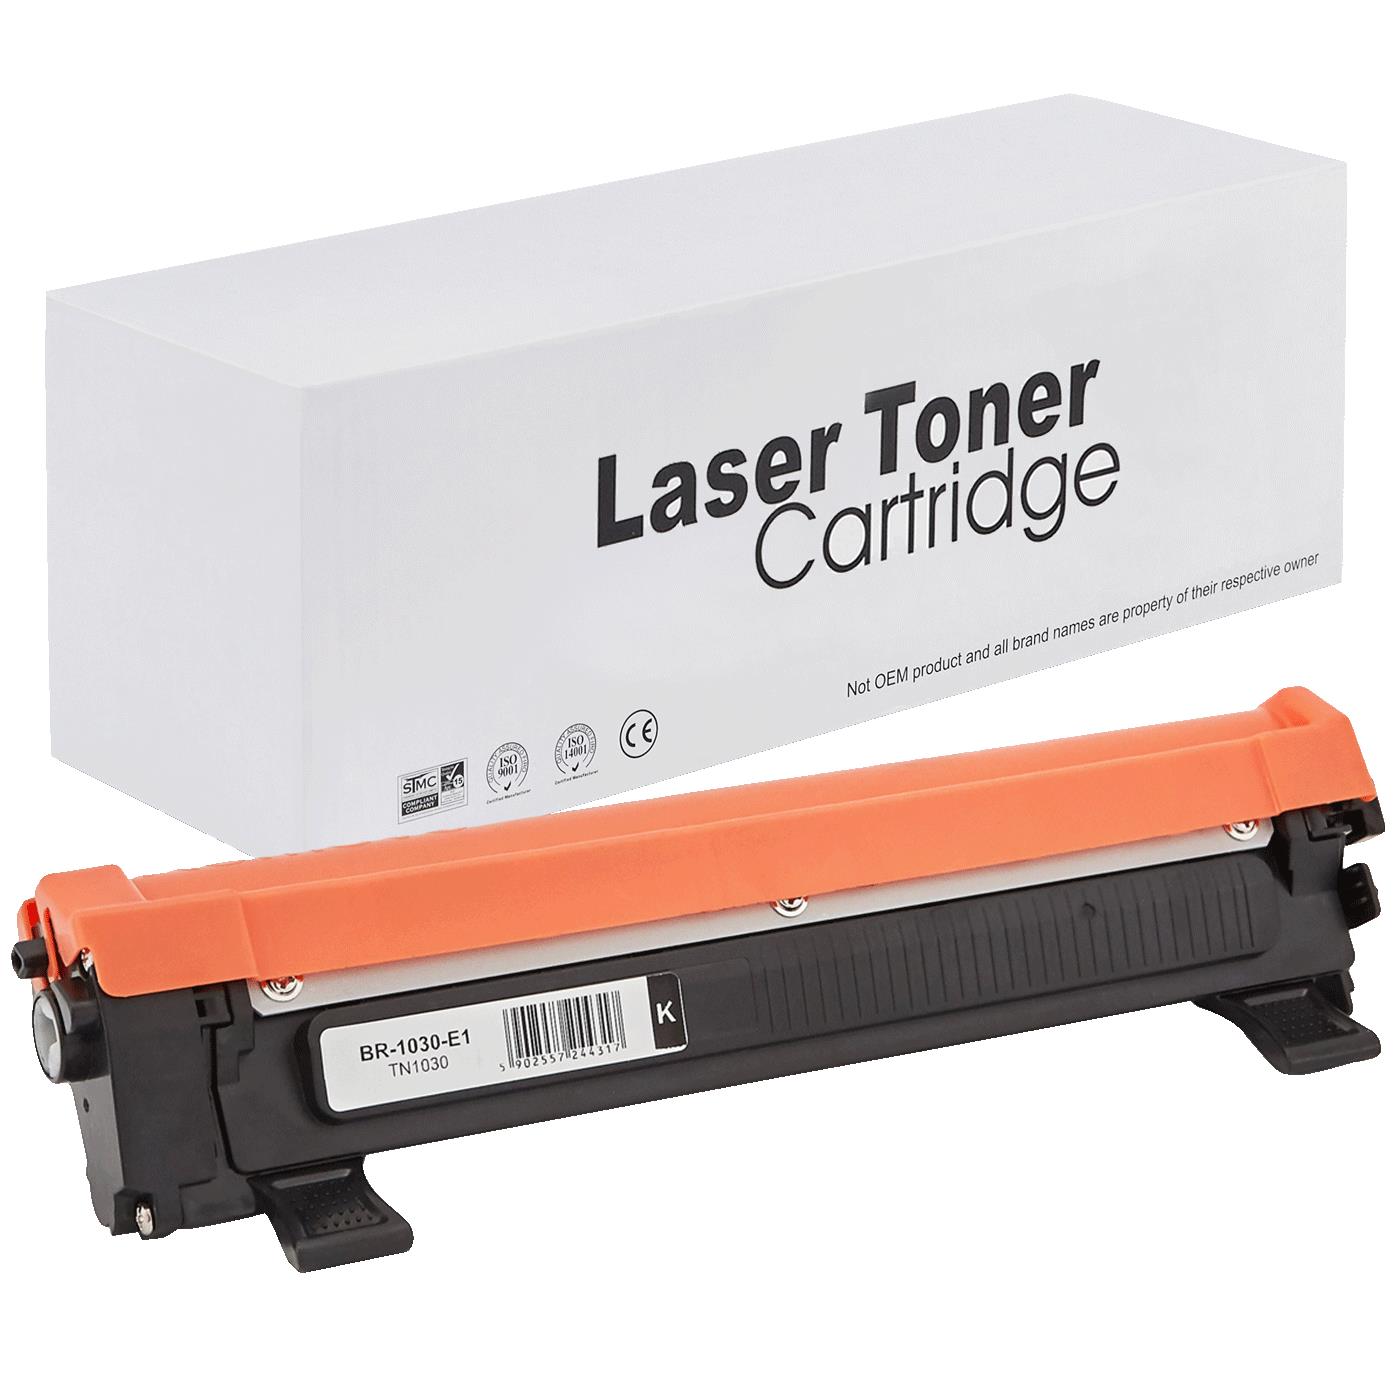 съвместима тонер касета за принтери и печатащи устройства на Brother 1810E Toner BR-1030 | TN1030 / TN1050 / TN-1030. Ниски цени, прецизно изпълнение, високо качество.